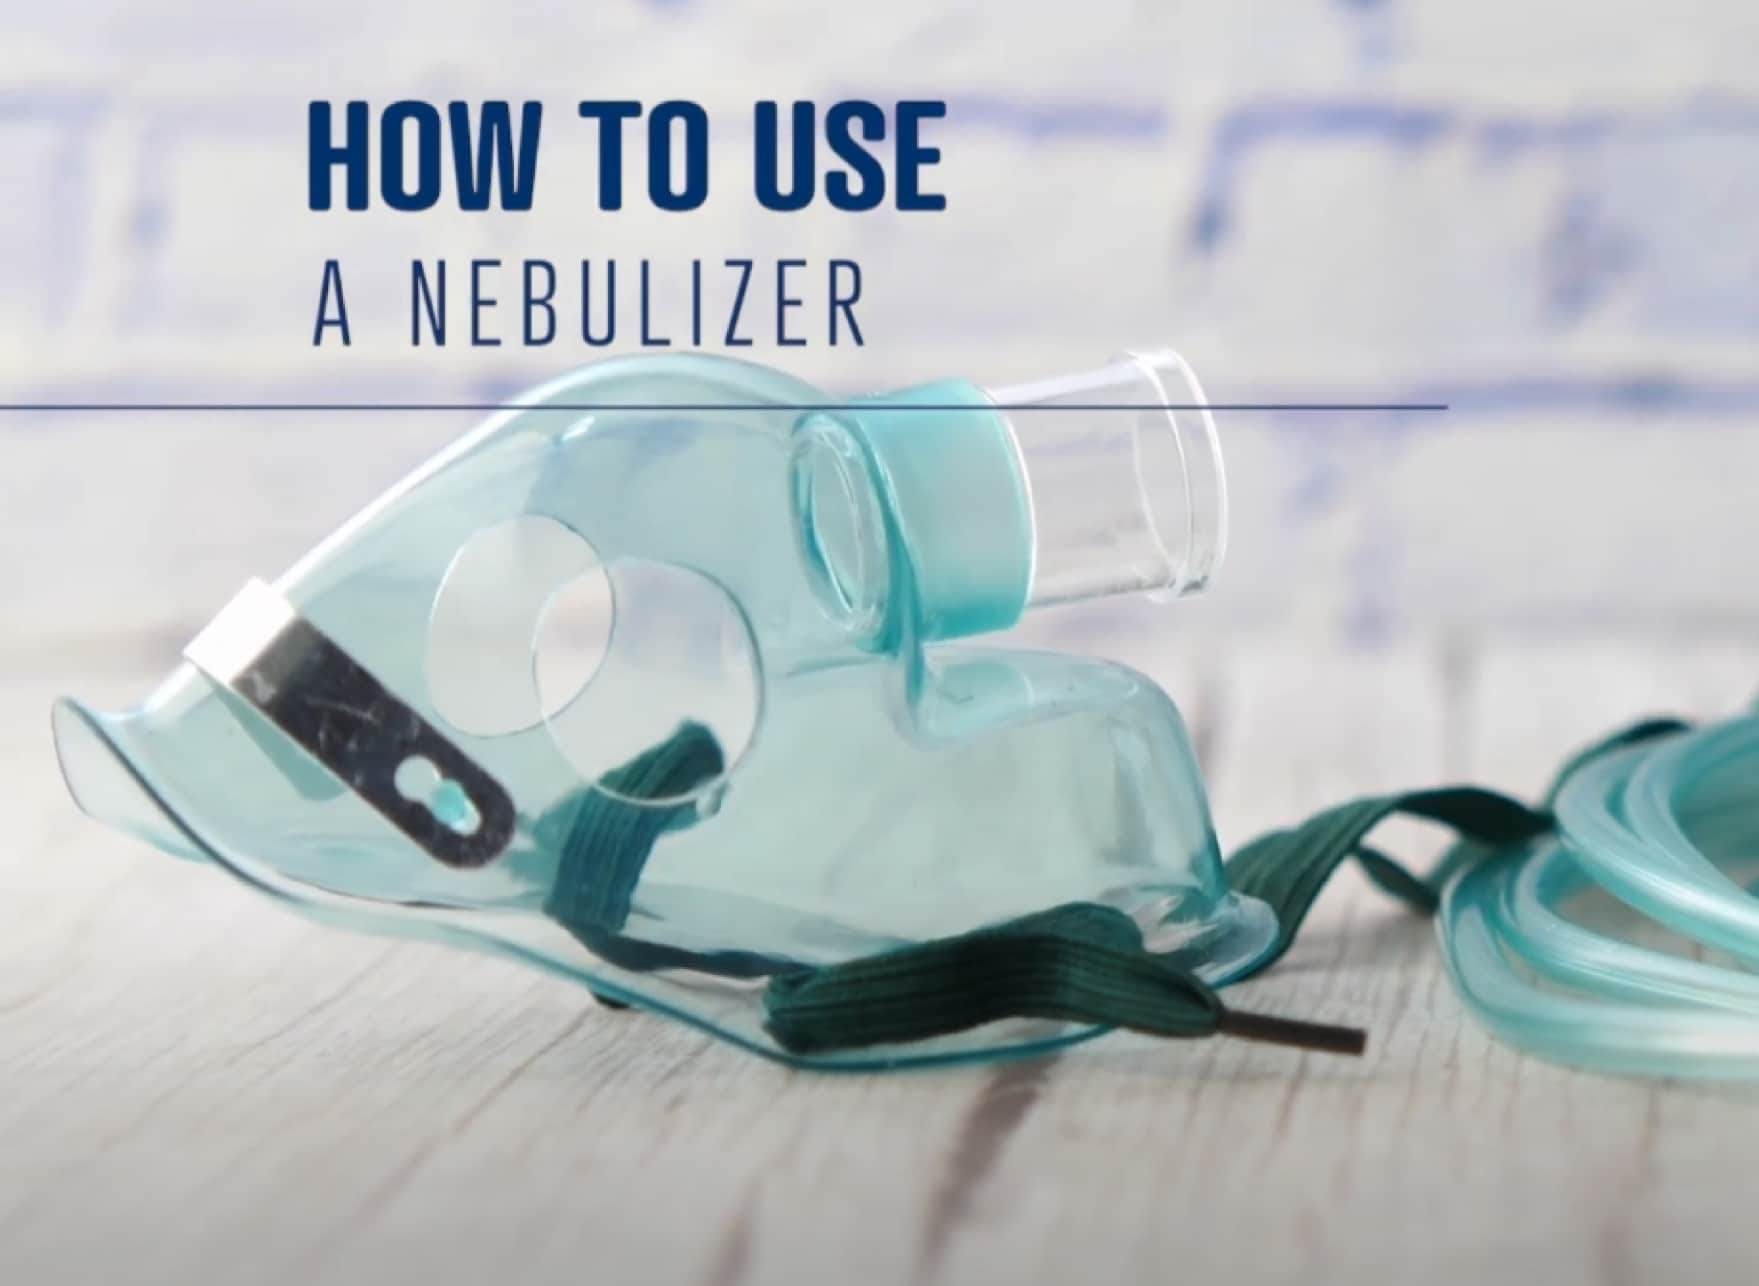 Imagen de una mascarilla nebulizadora y texto que dice "cómo usar un nebulizador".